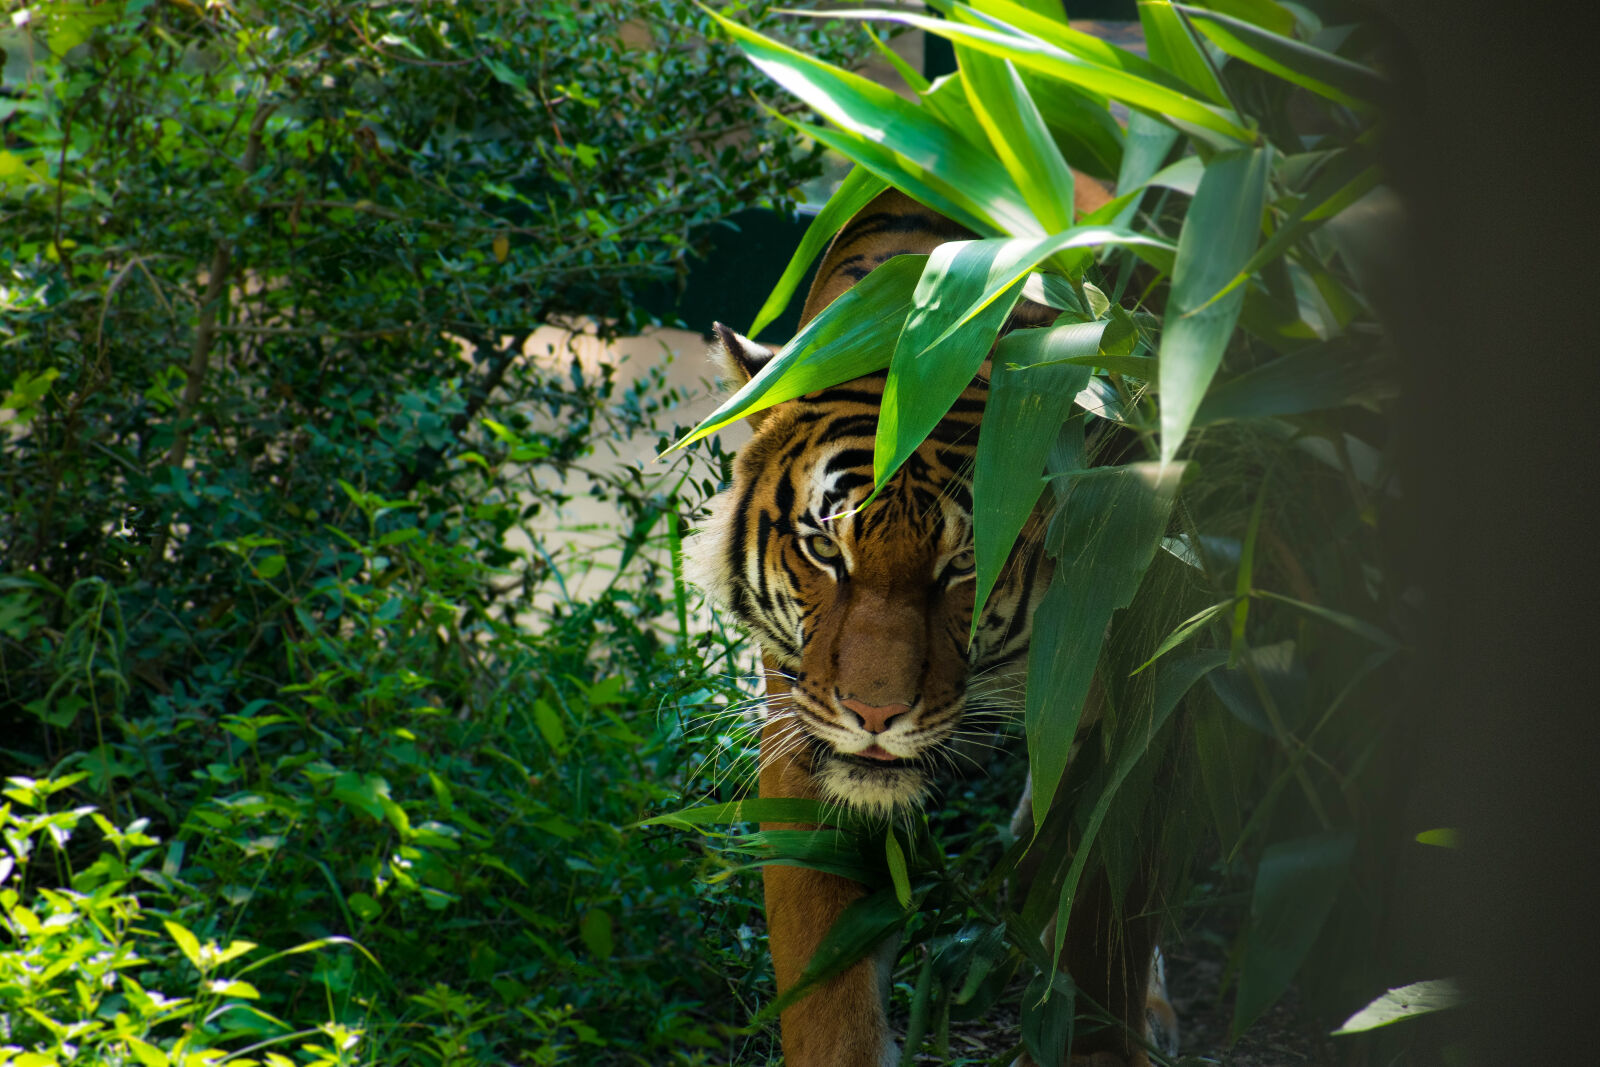 Nikon AF-P DX Nikkor 70-300mm F4.5-6.3G sample photo. Animal, jungle, tiger, wild photography